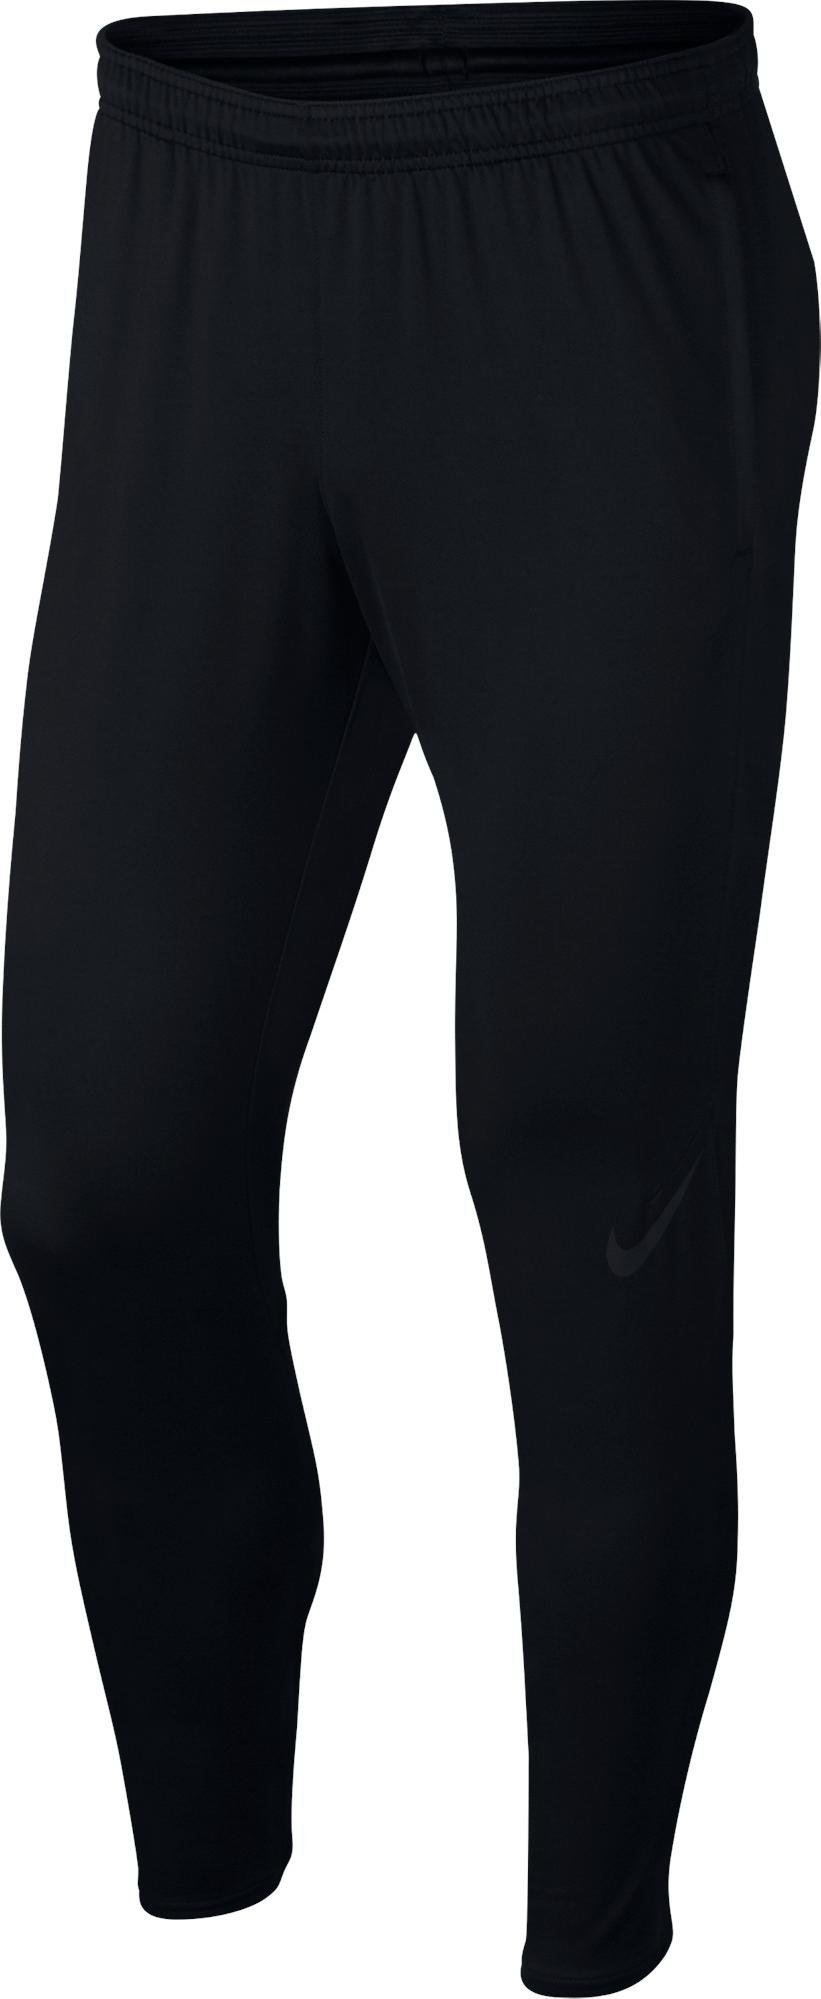 Pánské fotbalové kalhoty Nike Dry Squad KP 18